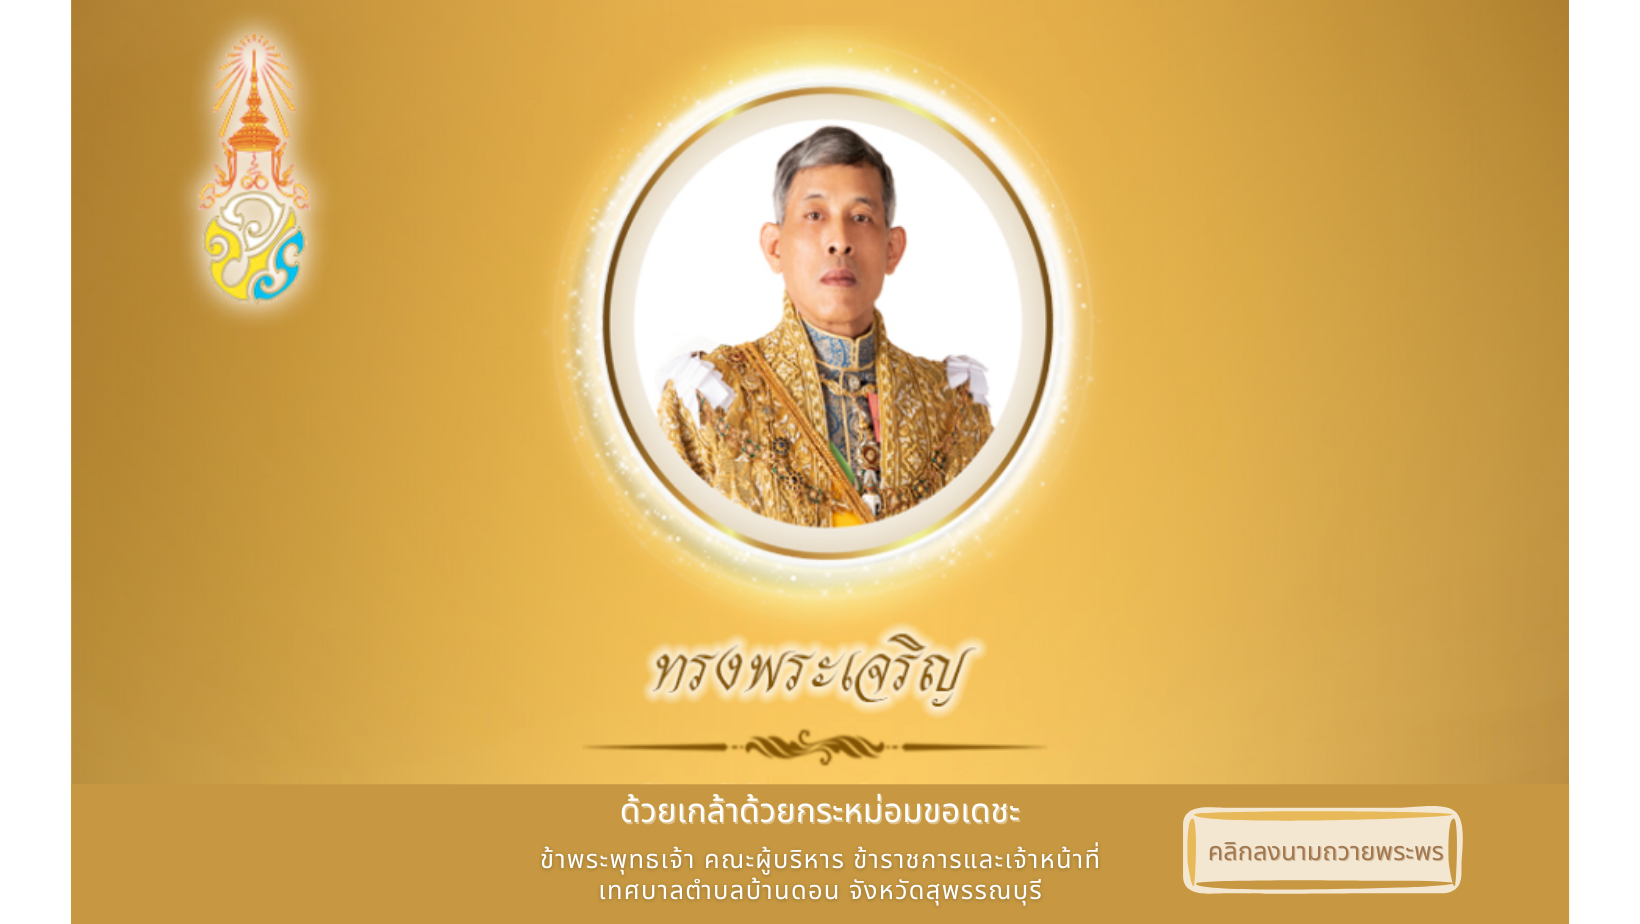 เทศบาลตำบลบ้านดอน ขอเชิญประชาชนชาวไทย ร่วมลงนามถวายพระพร เนื่องในวันฉัตรมงคล วันที่ 4 พฤษภาคม 2565